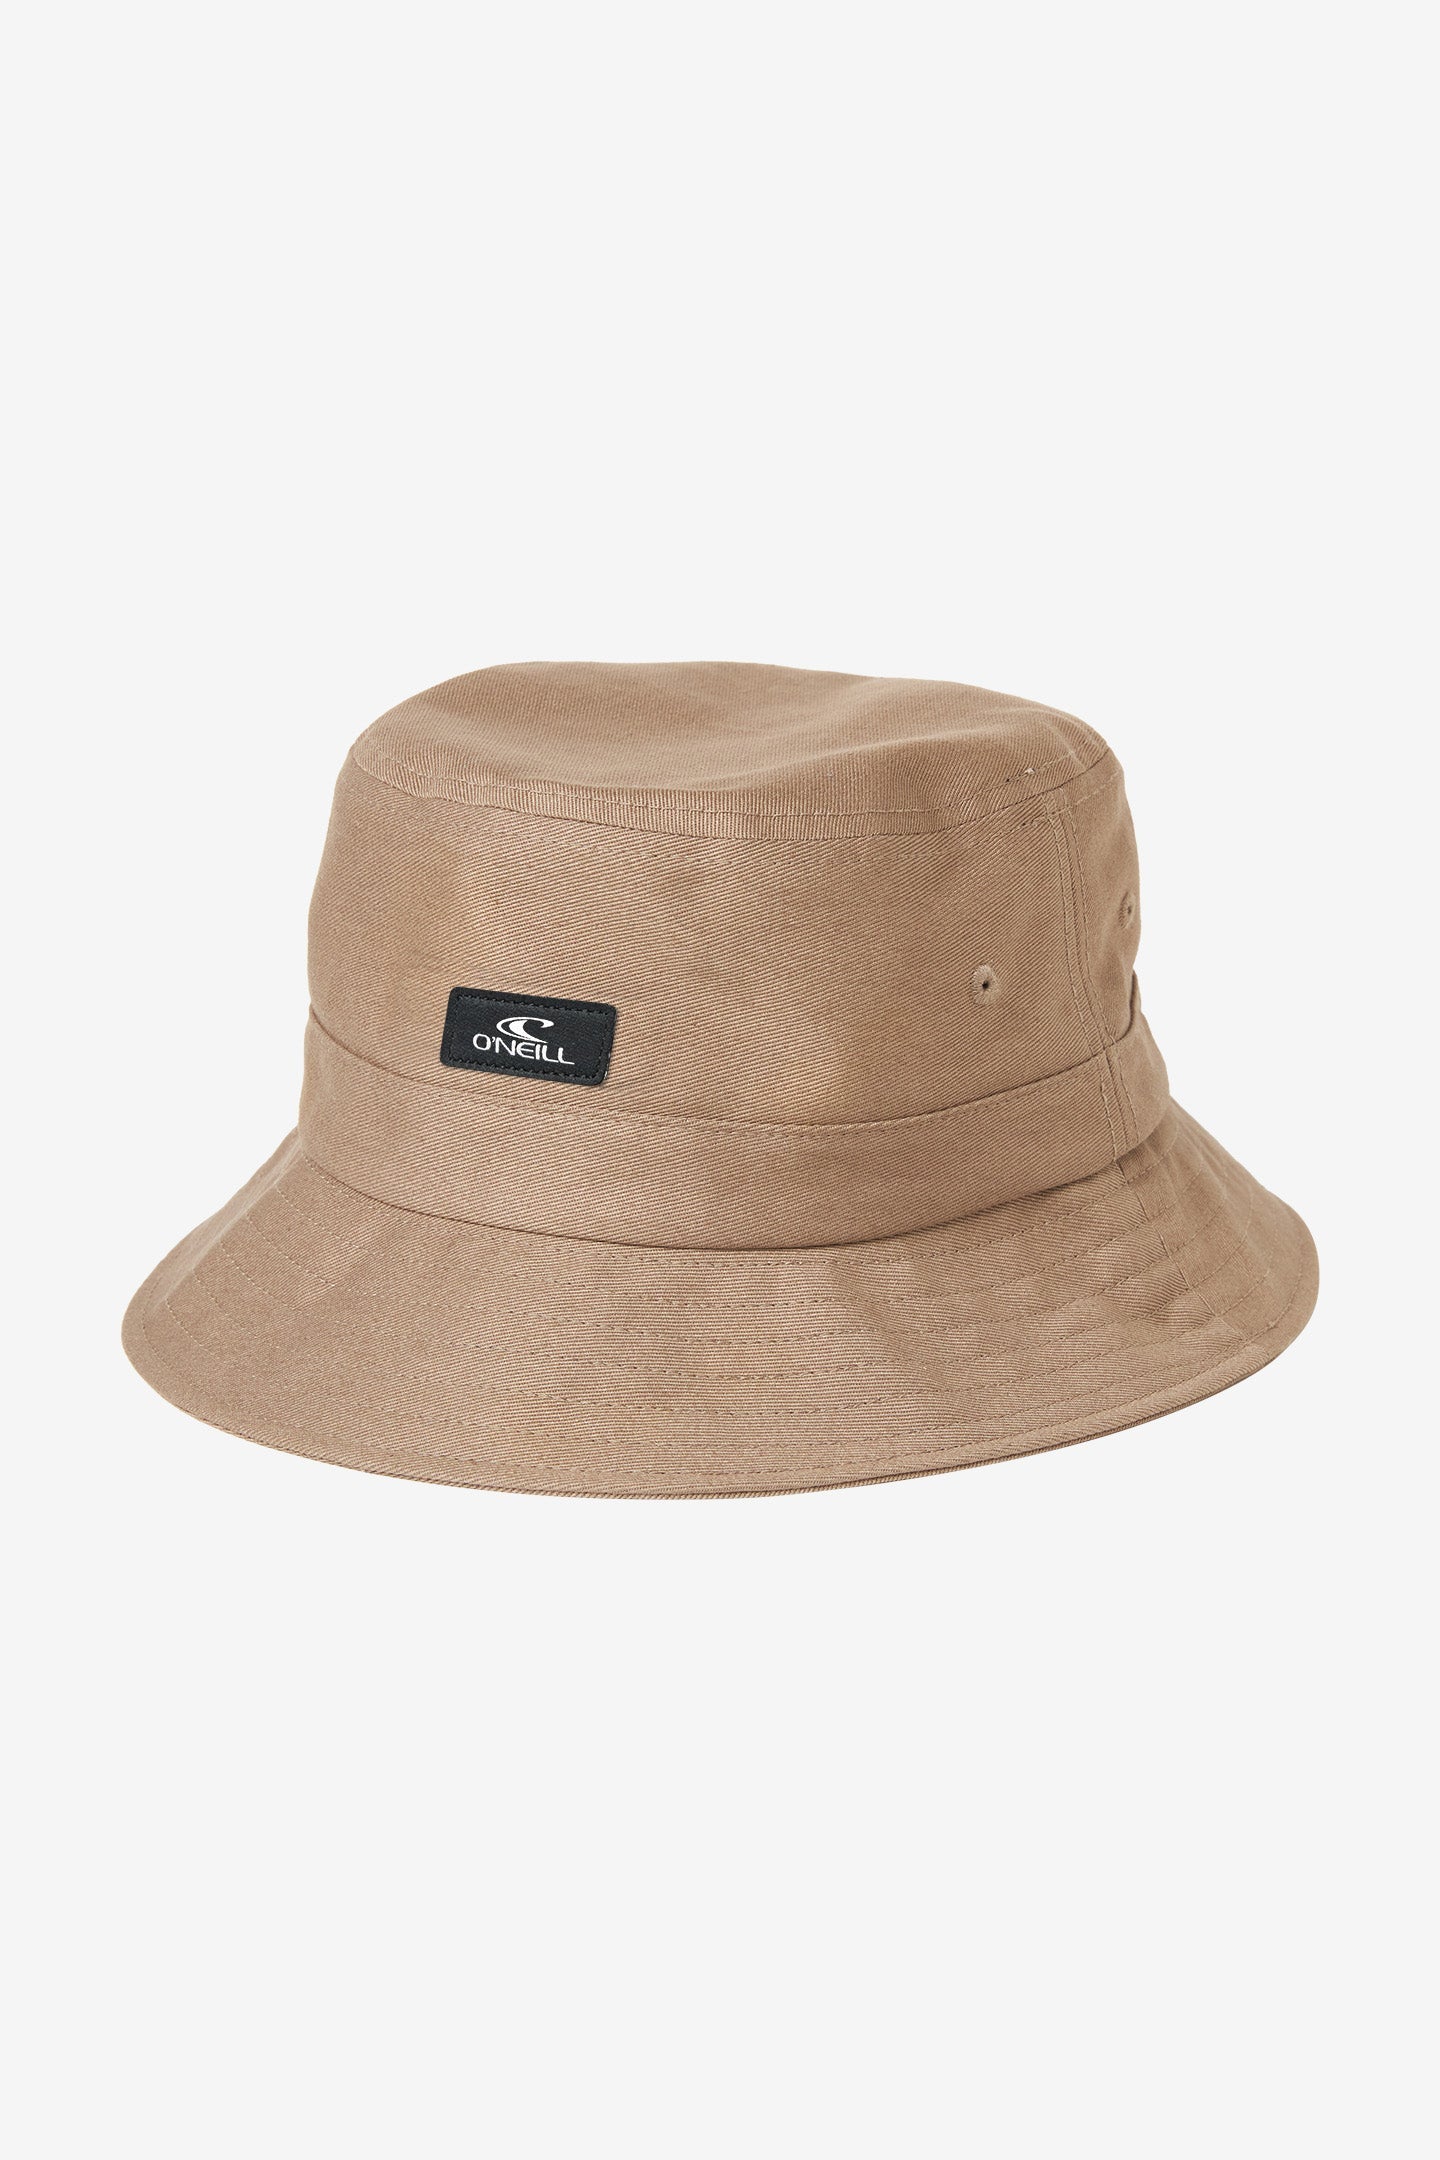 O'Neill Mens Bucket Hat